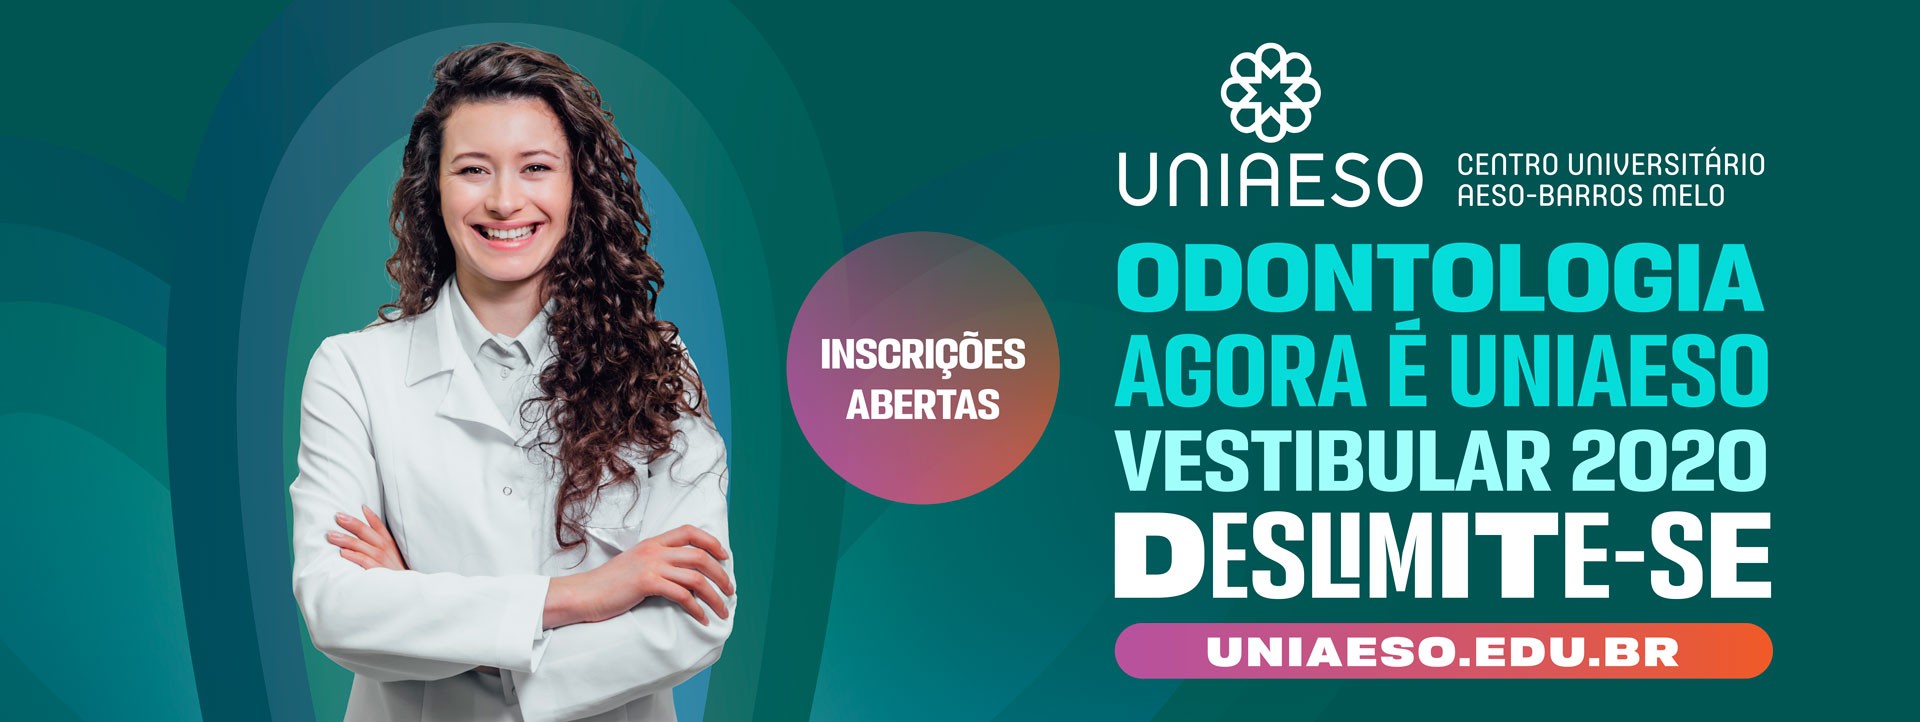 http://uniaeso.edu.br/vestibular